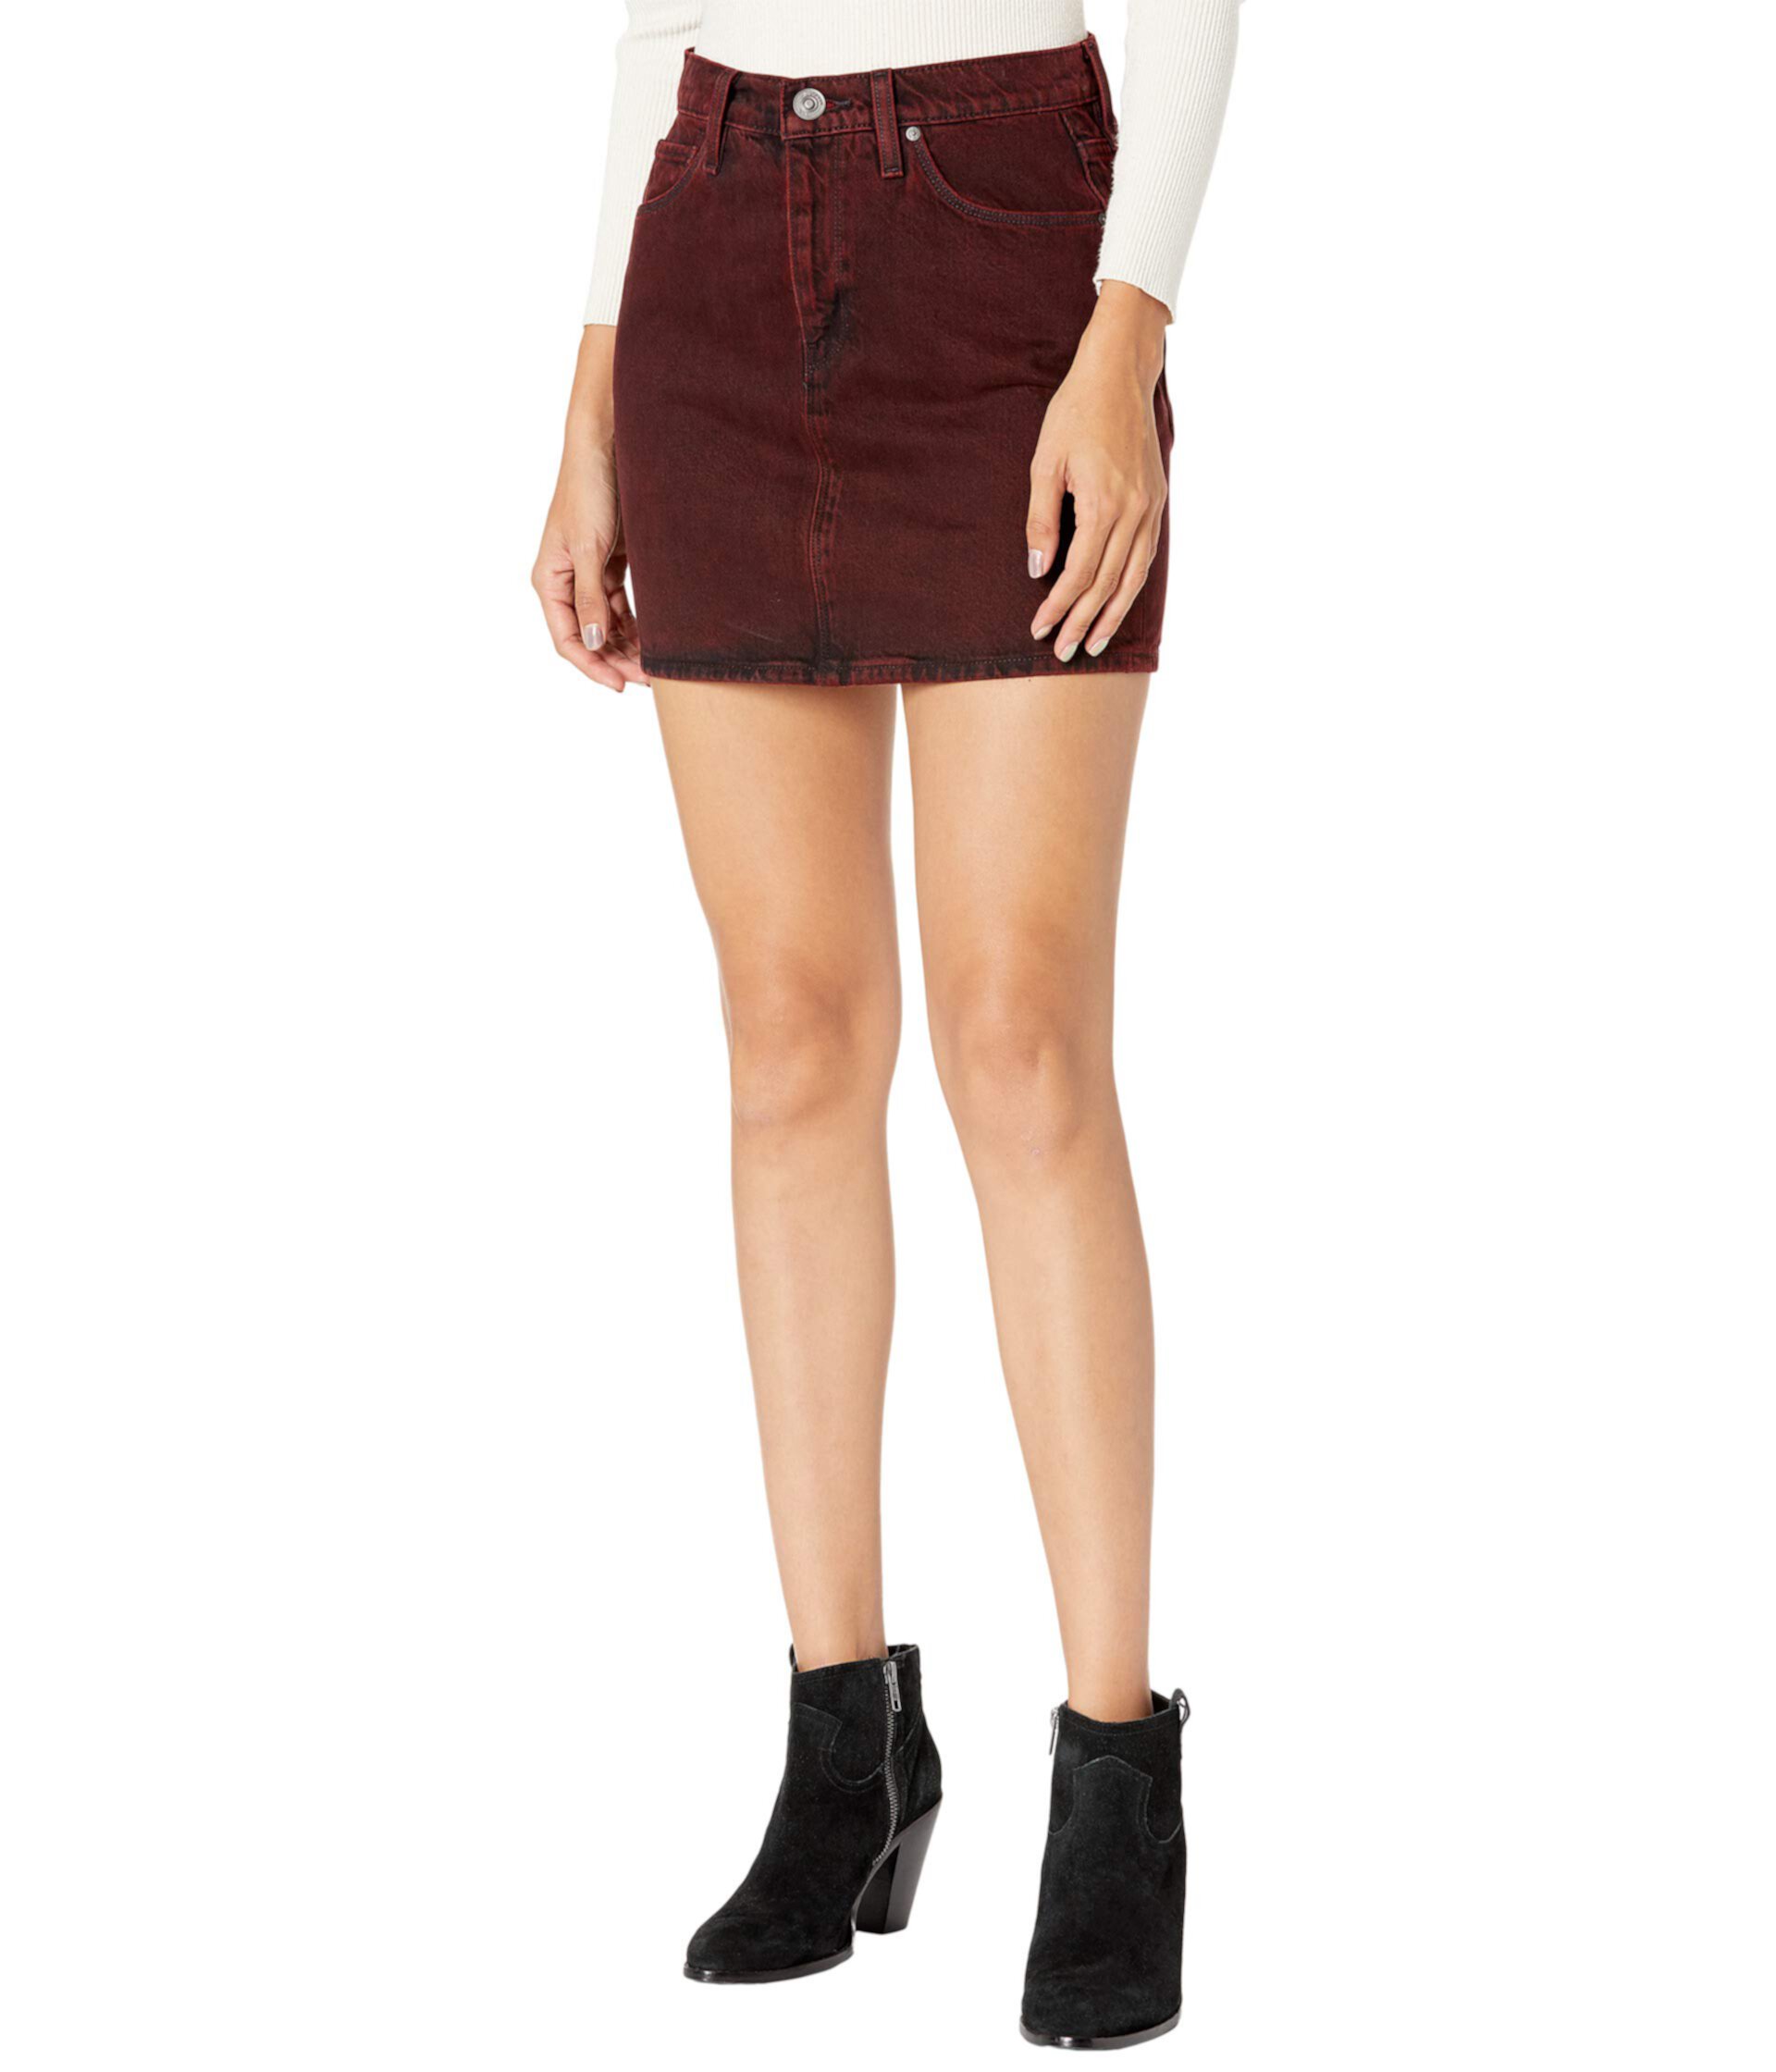 Viper Miniskirt in Indigo Burgundy Hudson Jeans